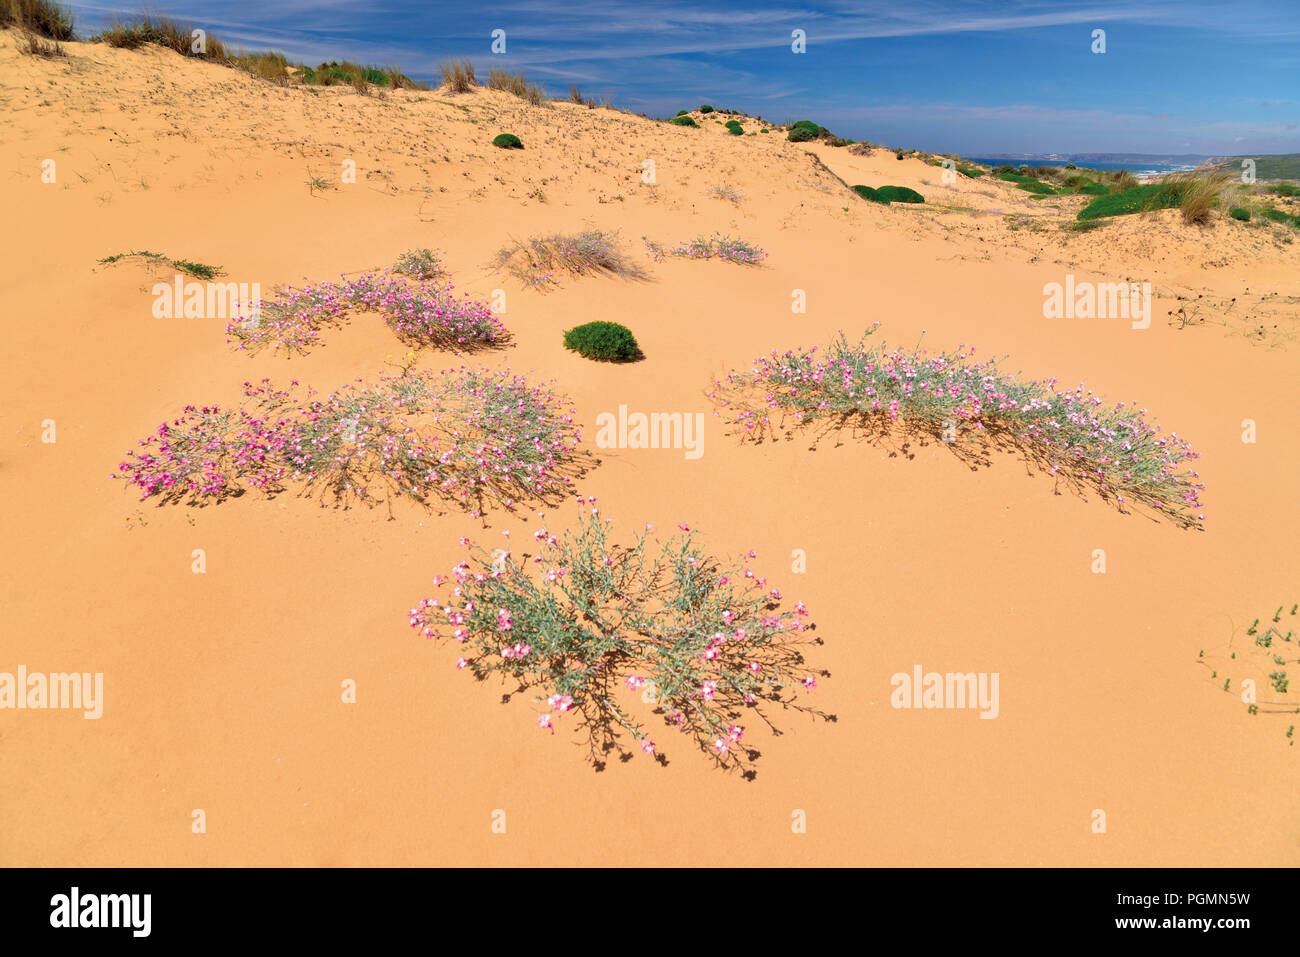 Dunes de sable, avec peu de fleurs roses poussant dans le sable Banque D'Images